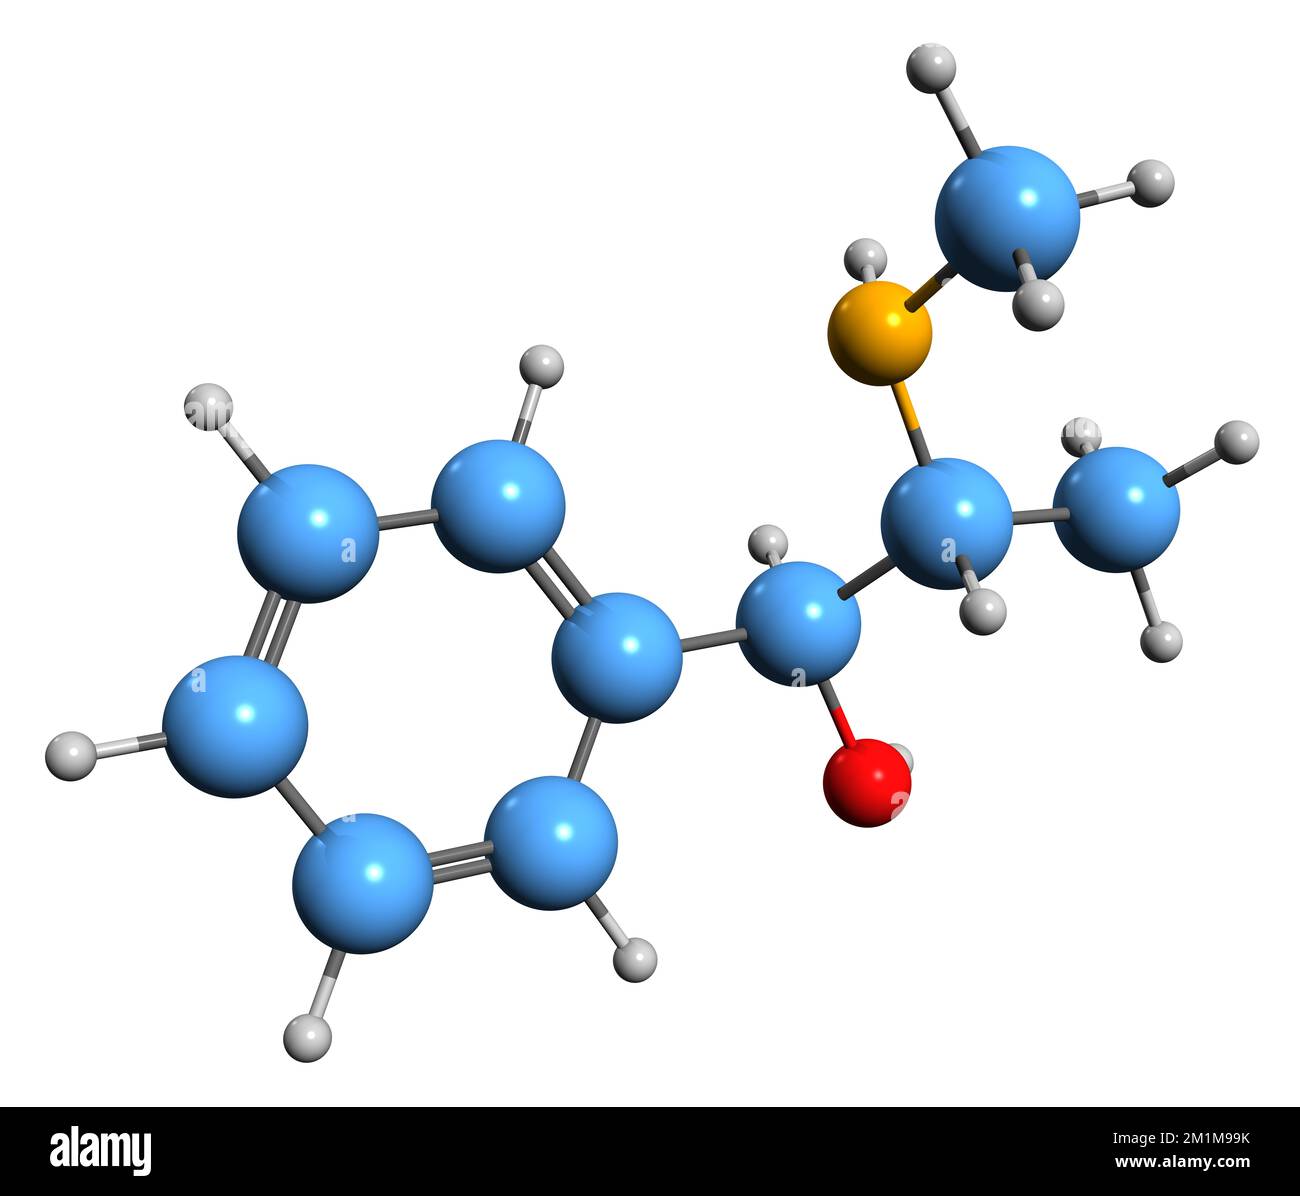 3D image de la formule squelettique de pseudoéphédrine - structure chimique moléculaire du médicament sympathomimétique isolé sur fond blanc Banque D'Images